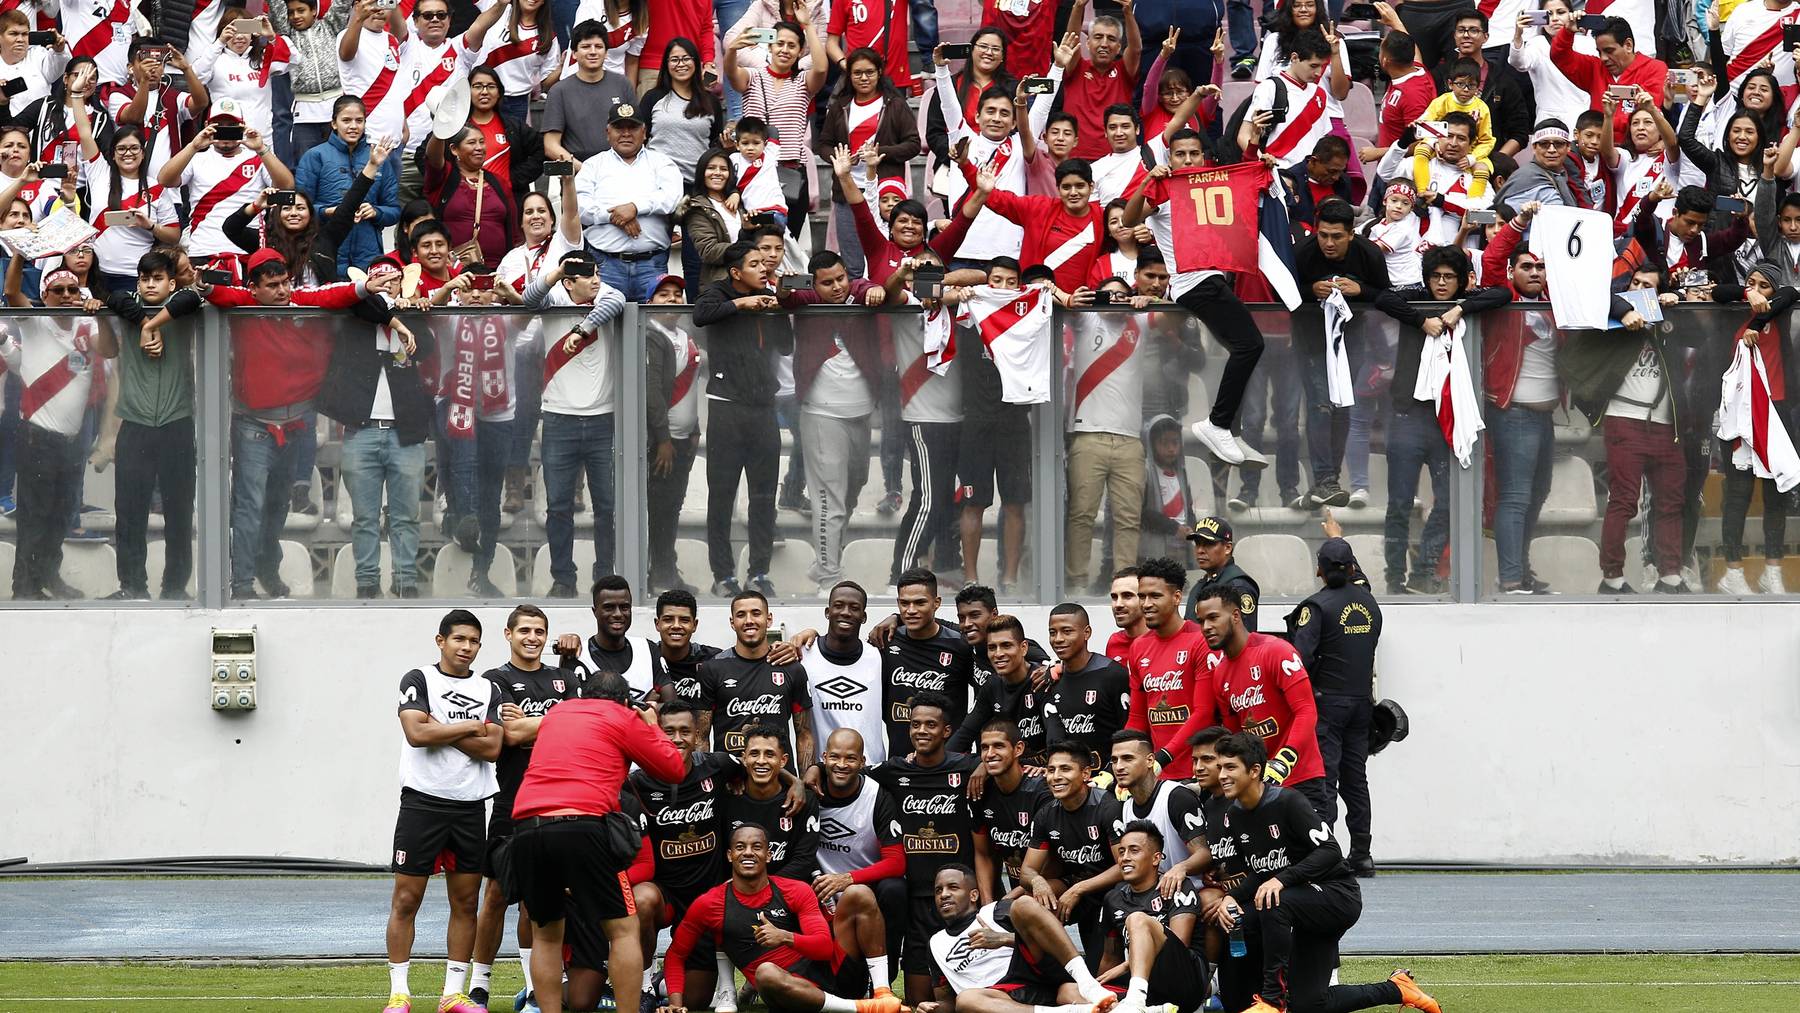 Die peruanischen Fans erscheinen auch zu öffentlichen Trainings zahlreich.